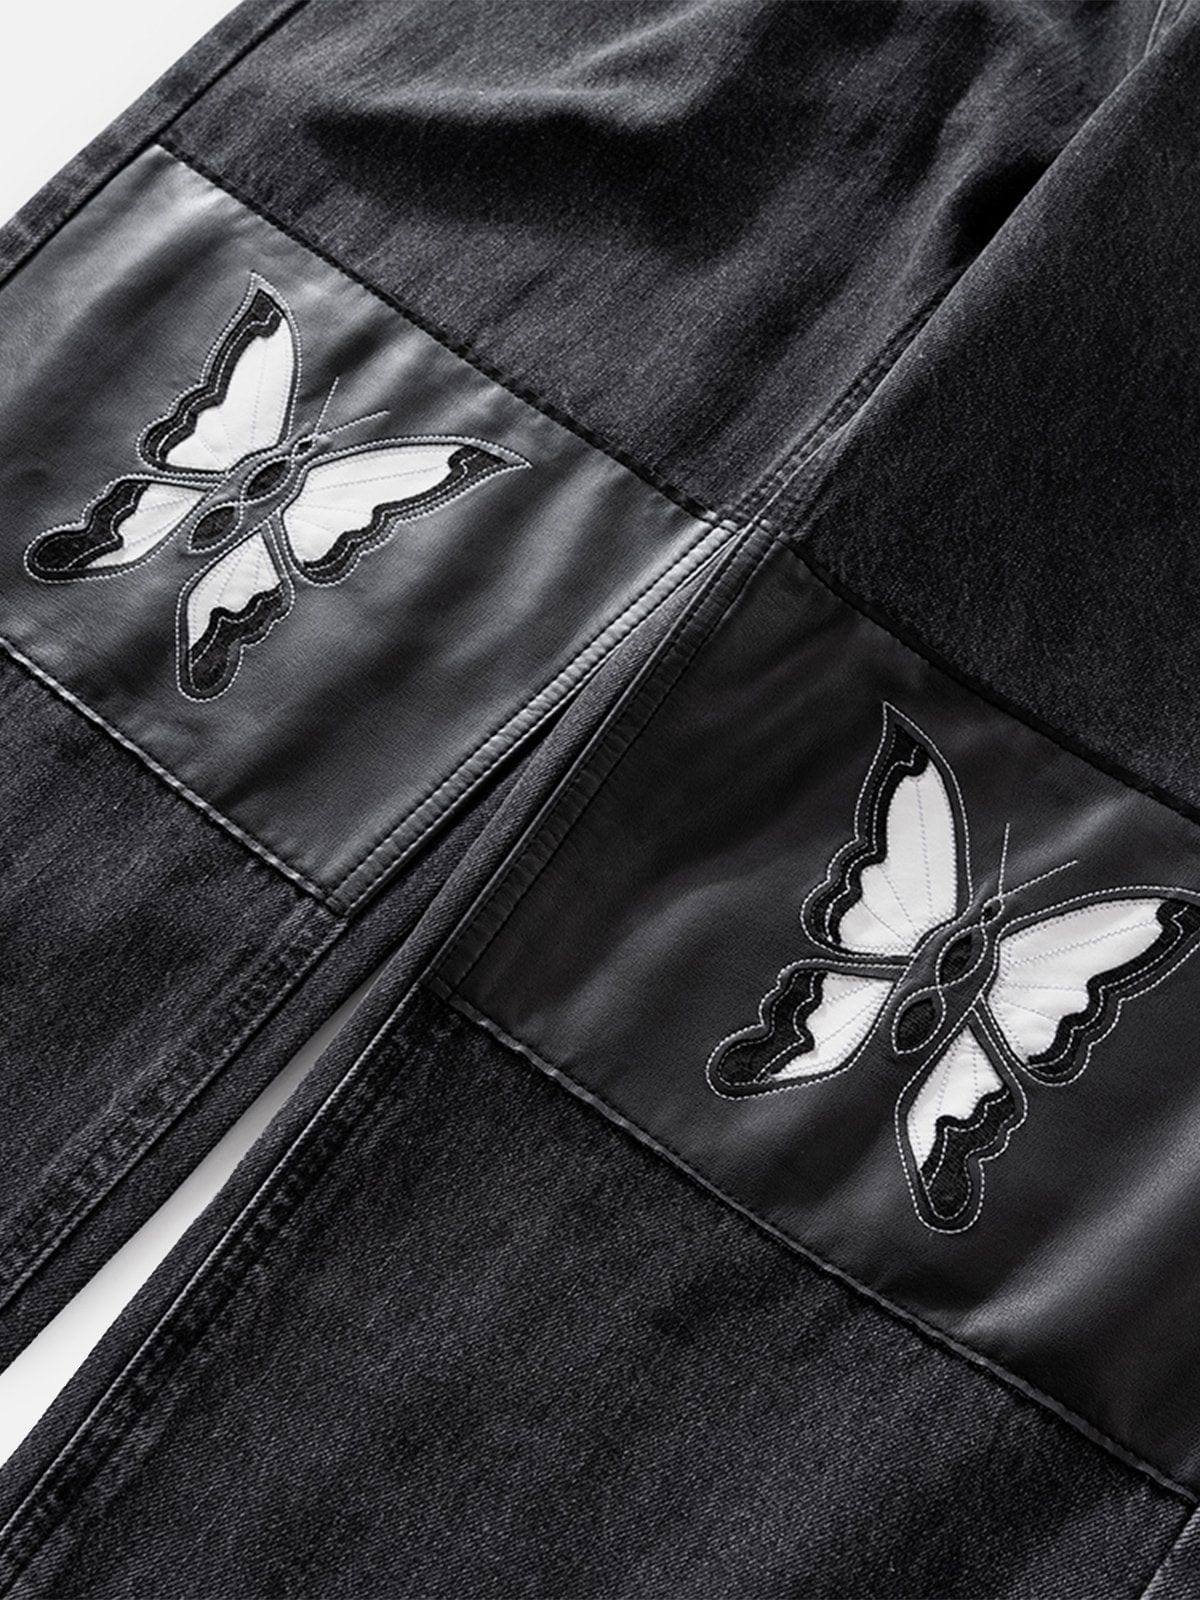 NEV Butterfly Patch Jeans